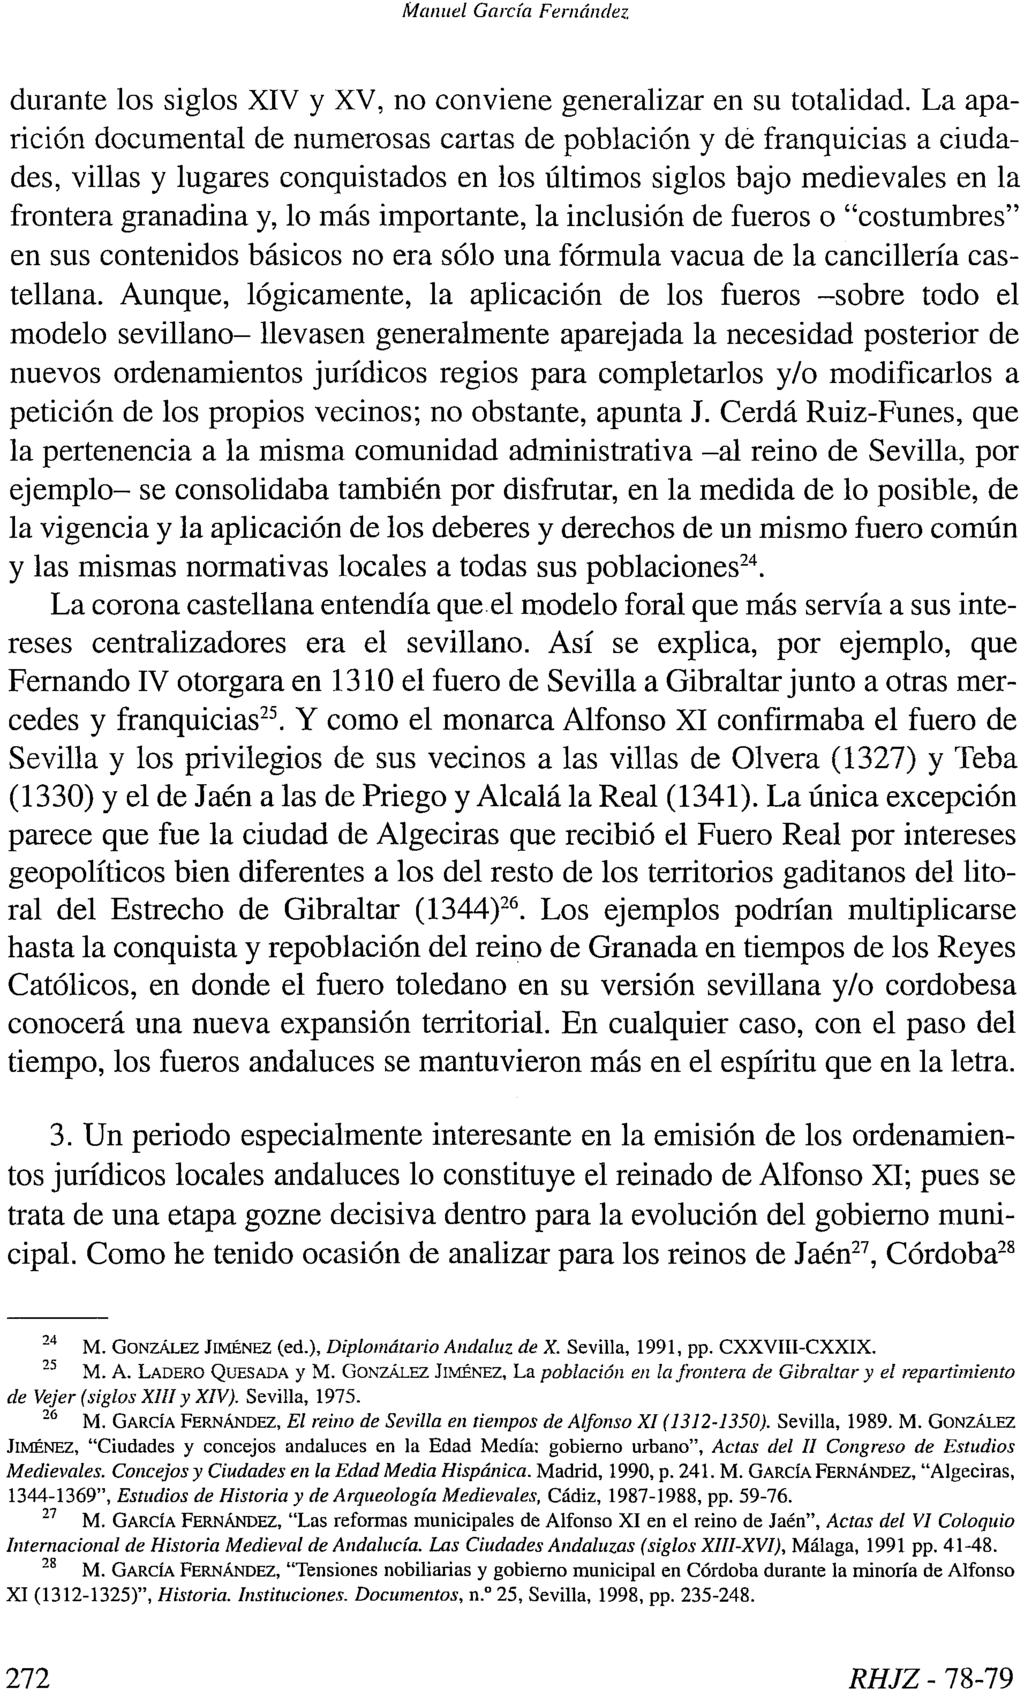 Manuel García Fernández durante los siglos XIV y XV, no conviene generalizar en su totalidad.